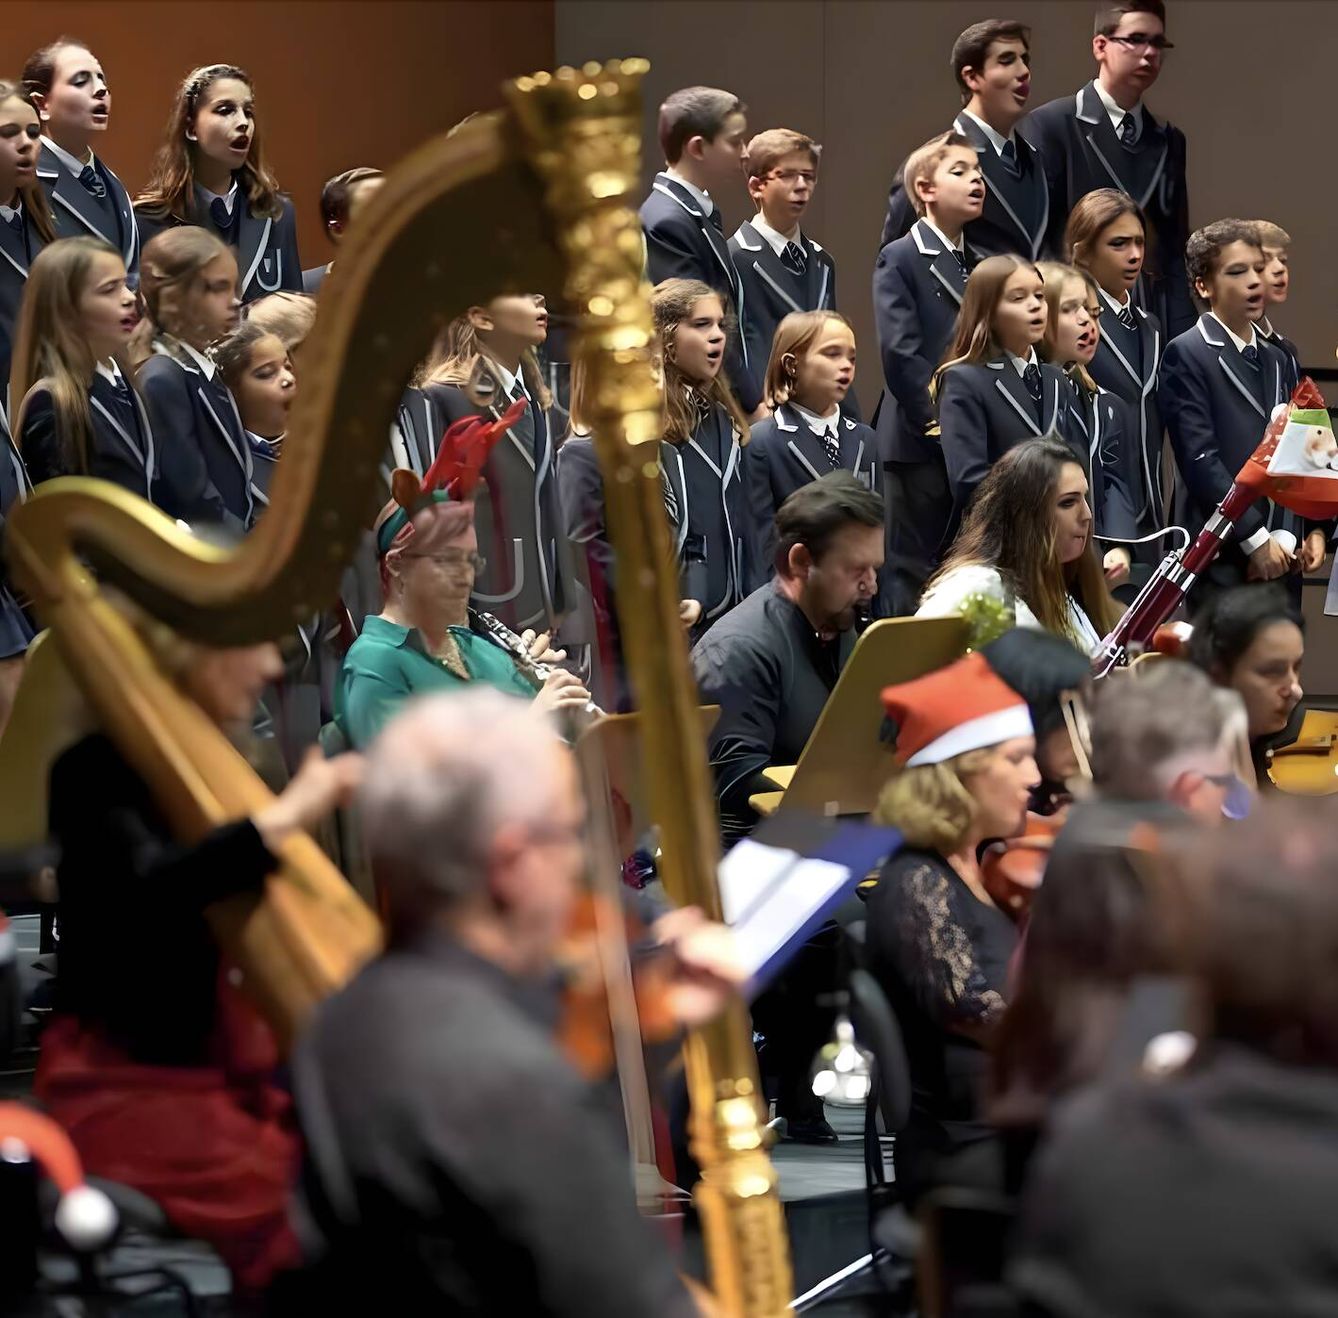 La orquesta sinfónica entona ritmos festivos en sus conciertos navideños estos días. (Cortesía)